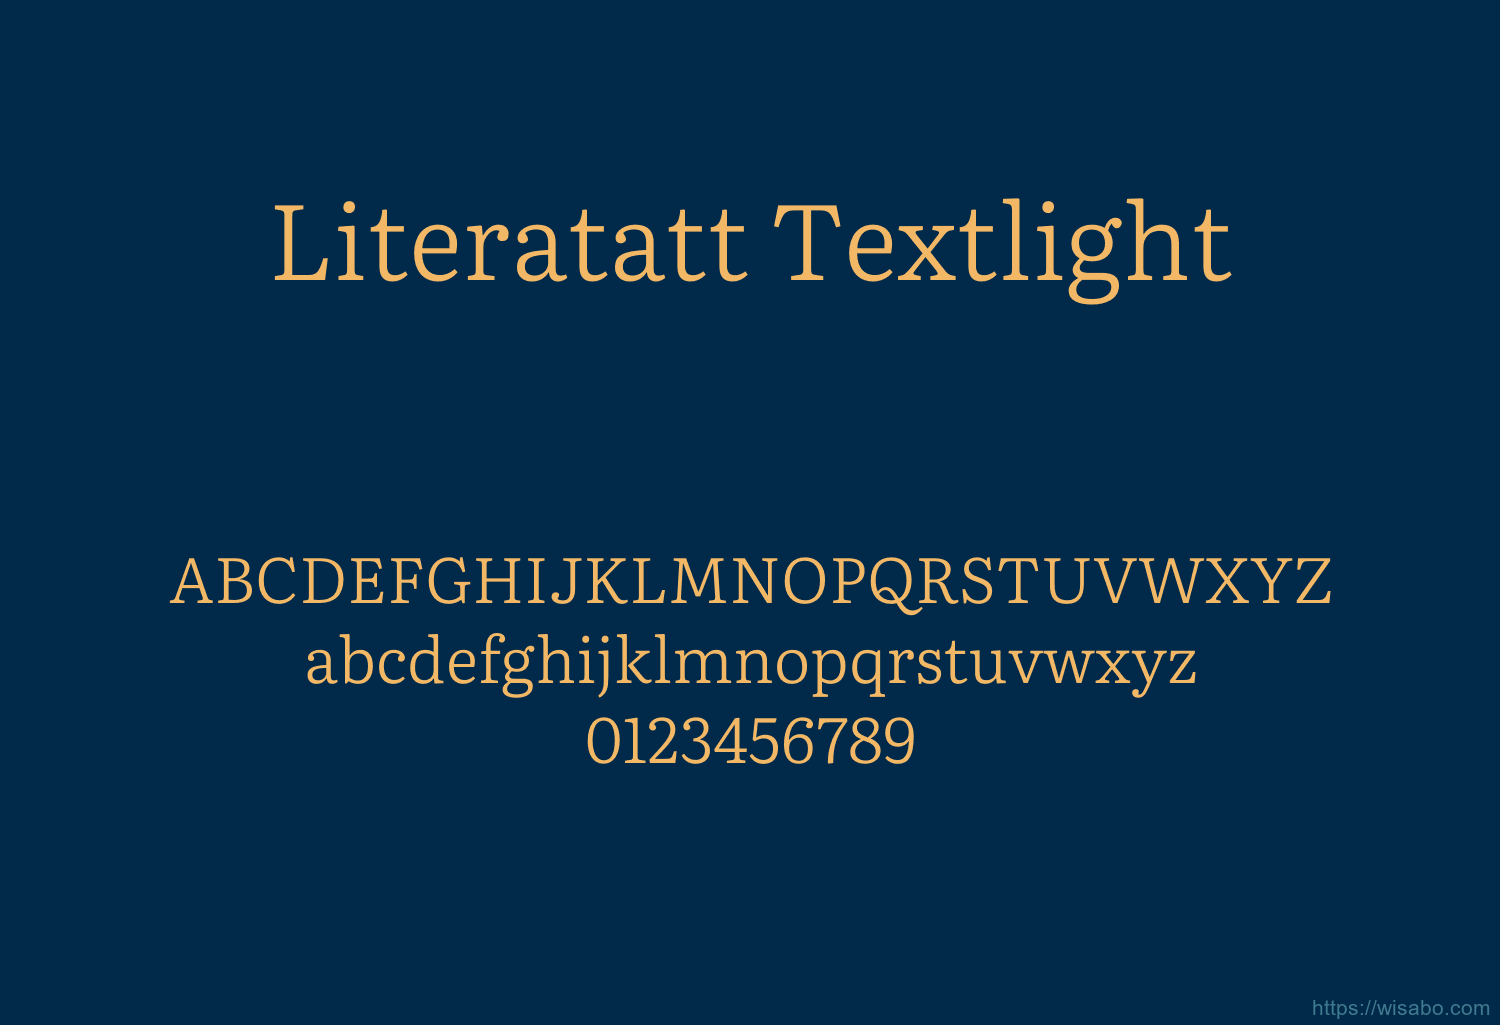 Literatatt Textlight